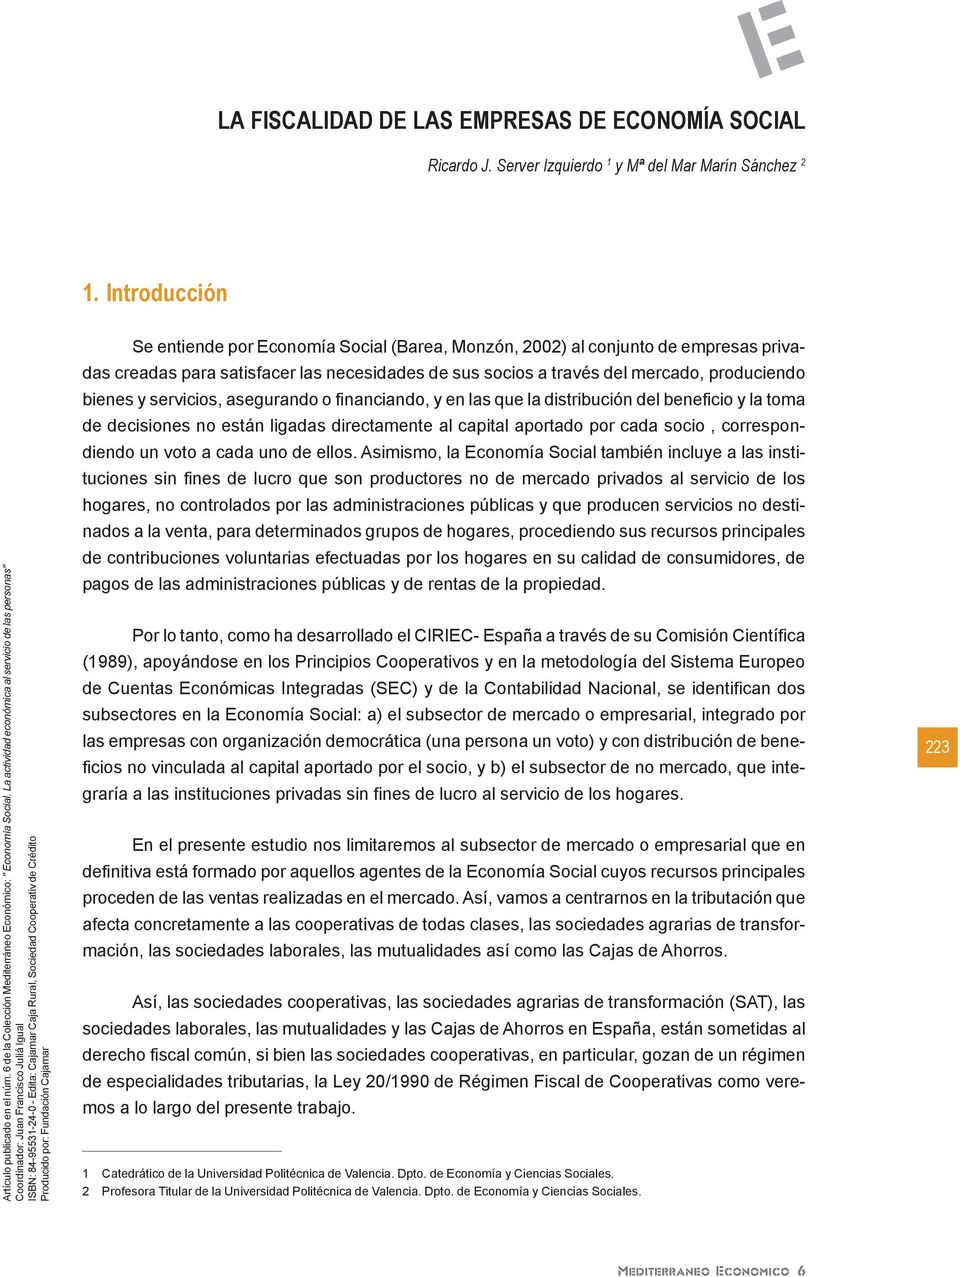 La actividad económica al servicio de las personas" Coordinador: Juan Francisco Juliá Igual ISBN: 84-95531-24-0 - Edita: Cajamar Caja Rural, Sociedad Cooperativ de Crédito Producido por: Fundación